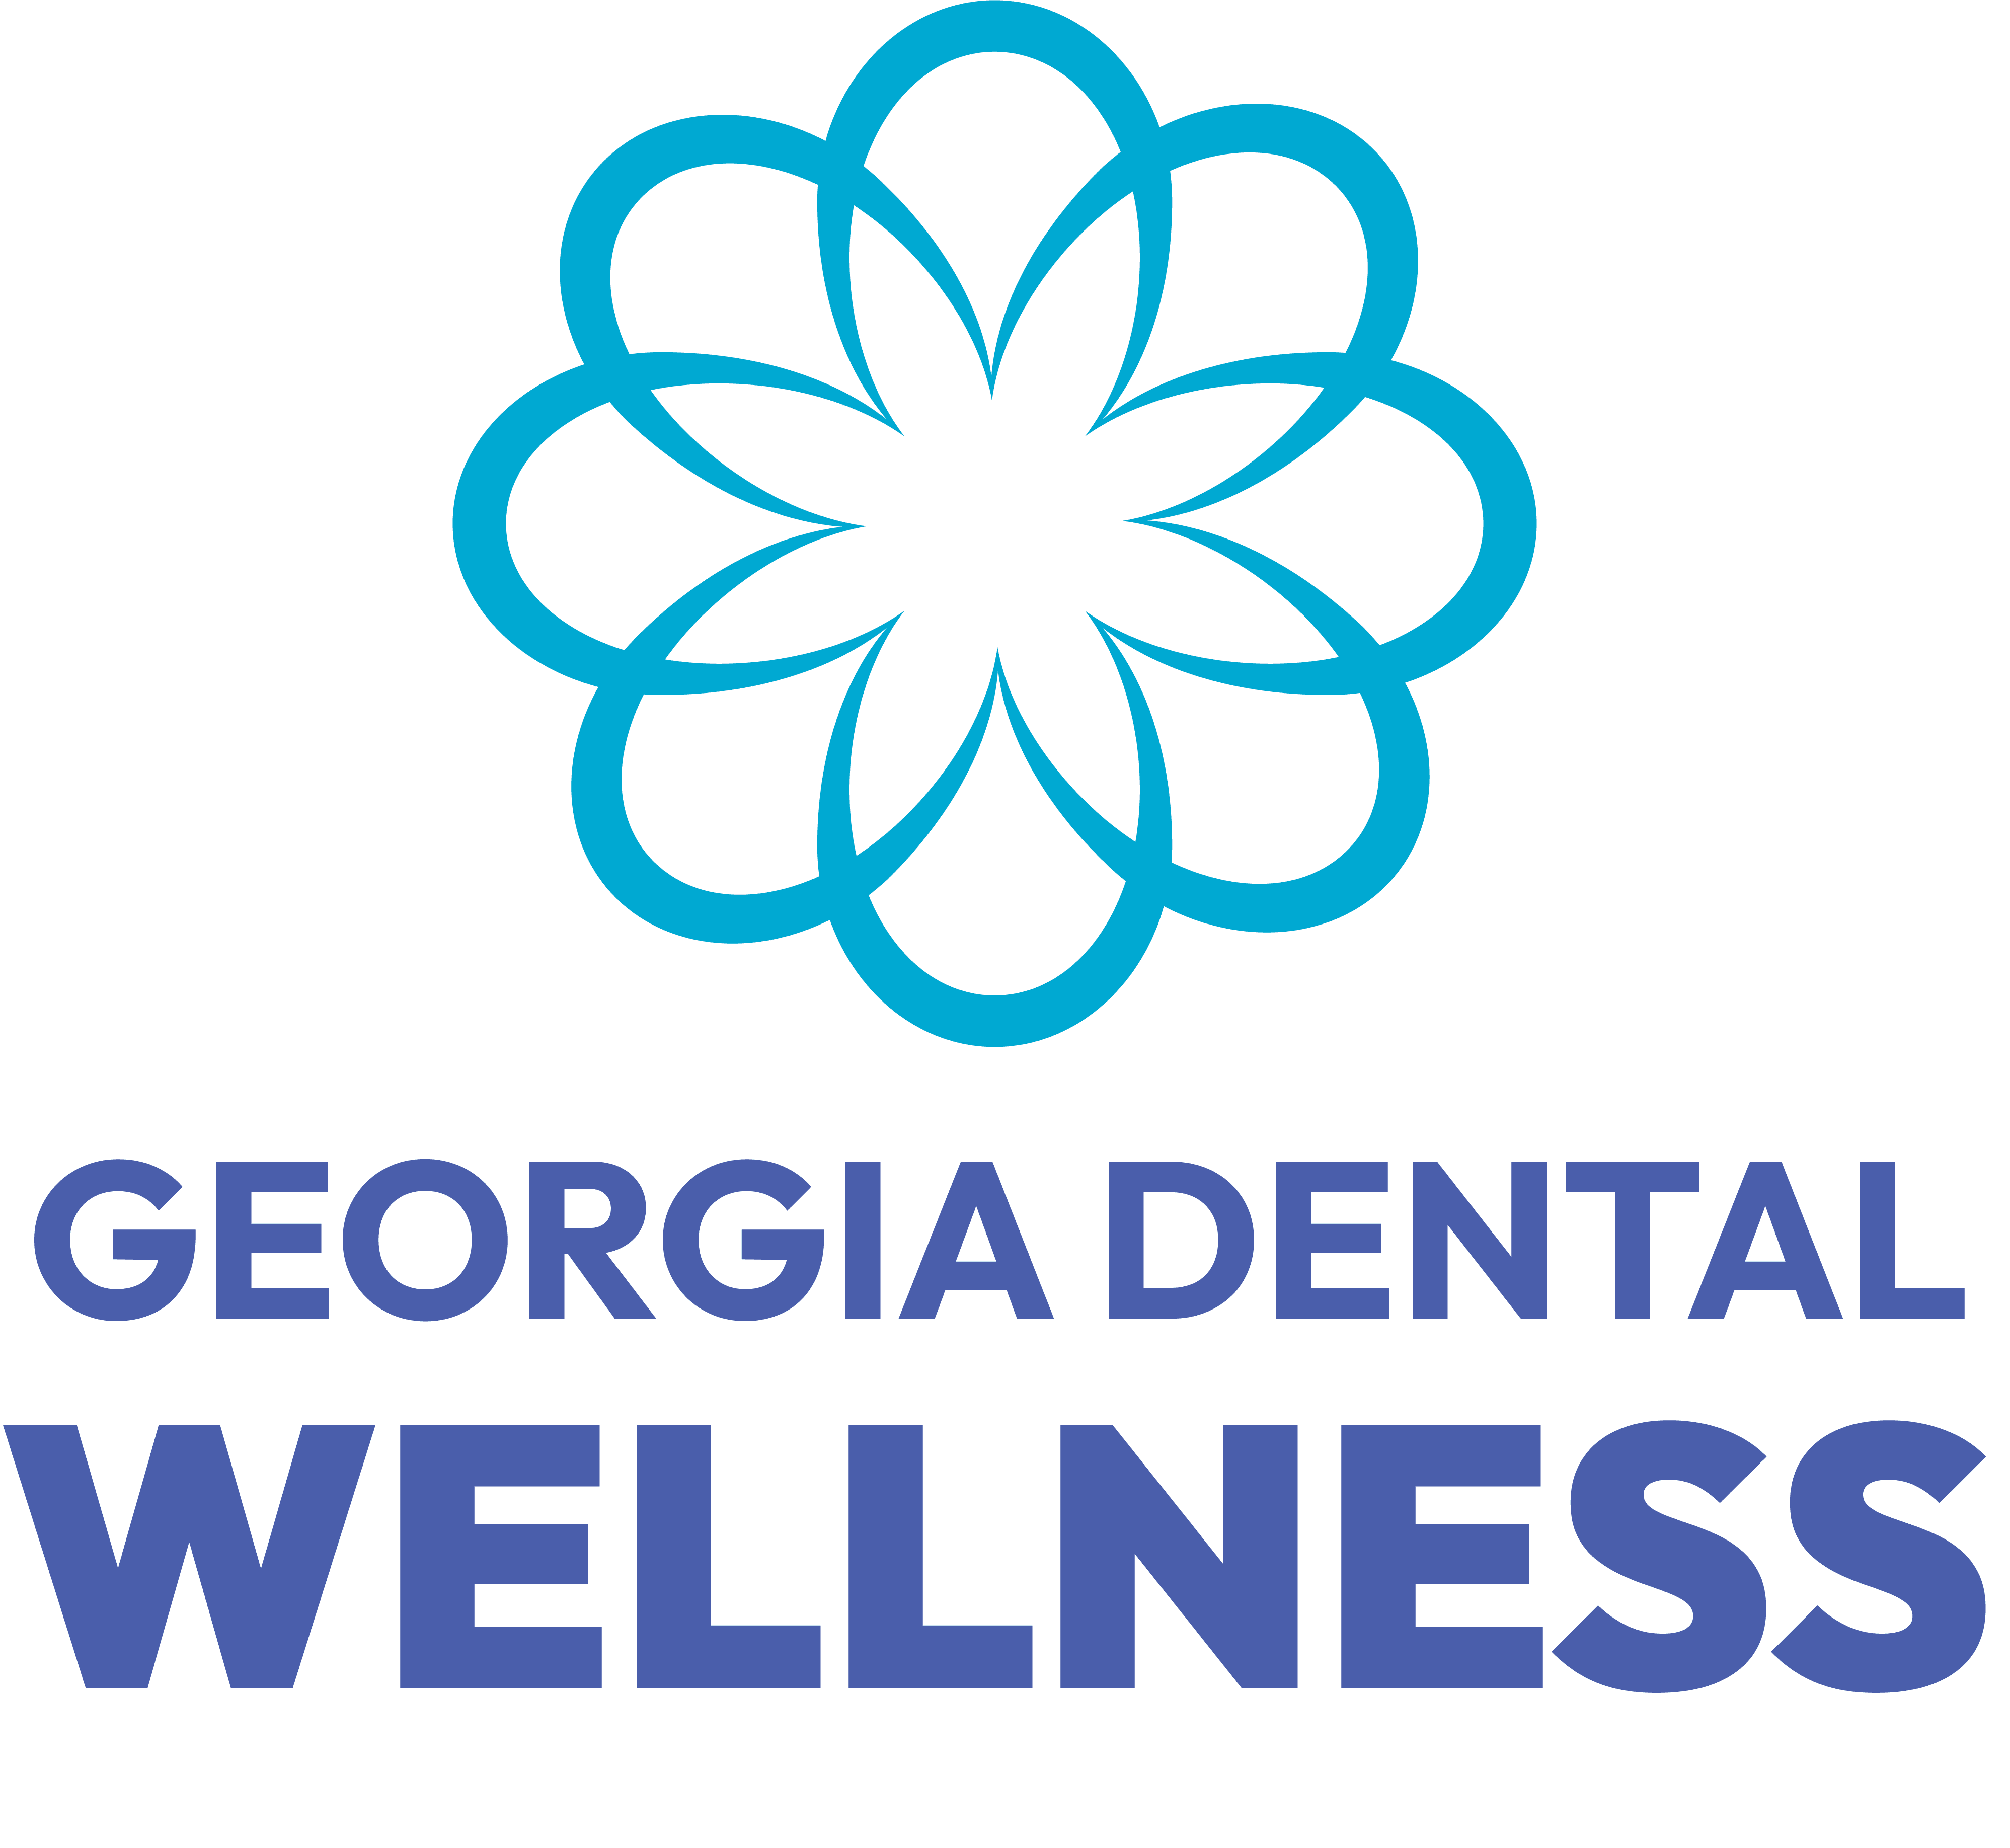 Georgia Dental Wellness Logo